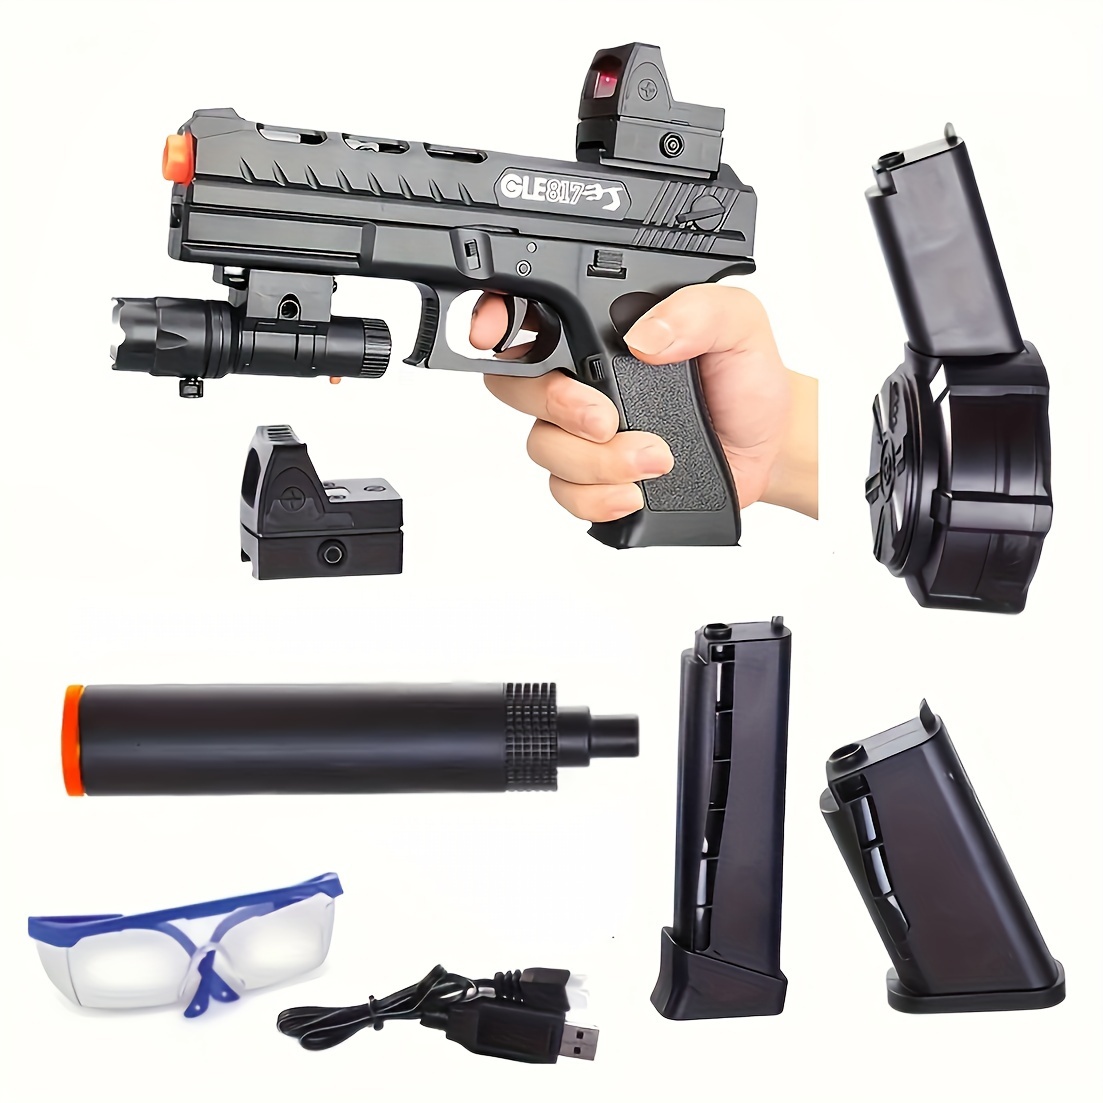 Acheter Pistolet à eau électrique Glock, jouet de tir entièrement  automatique, jouet de plage d'eau d'été pour enfants garçons filles adultes